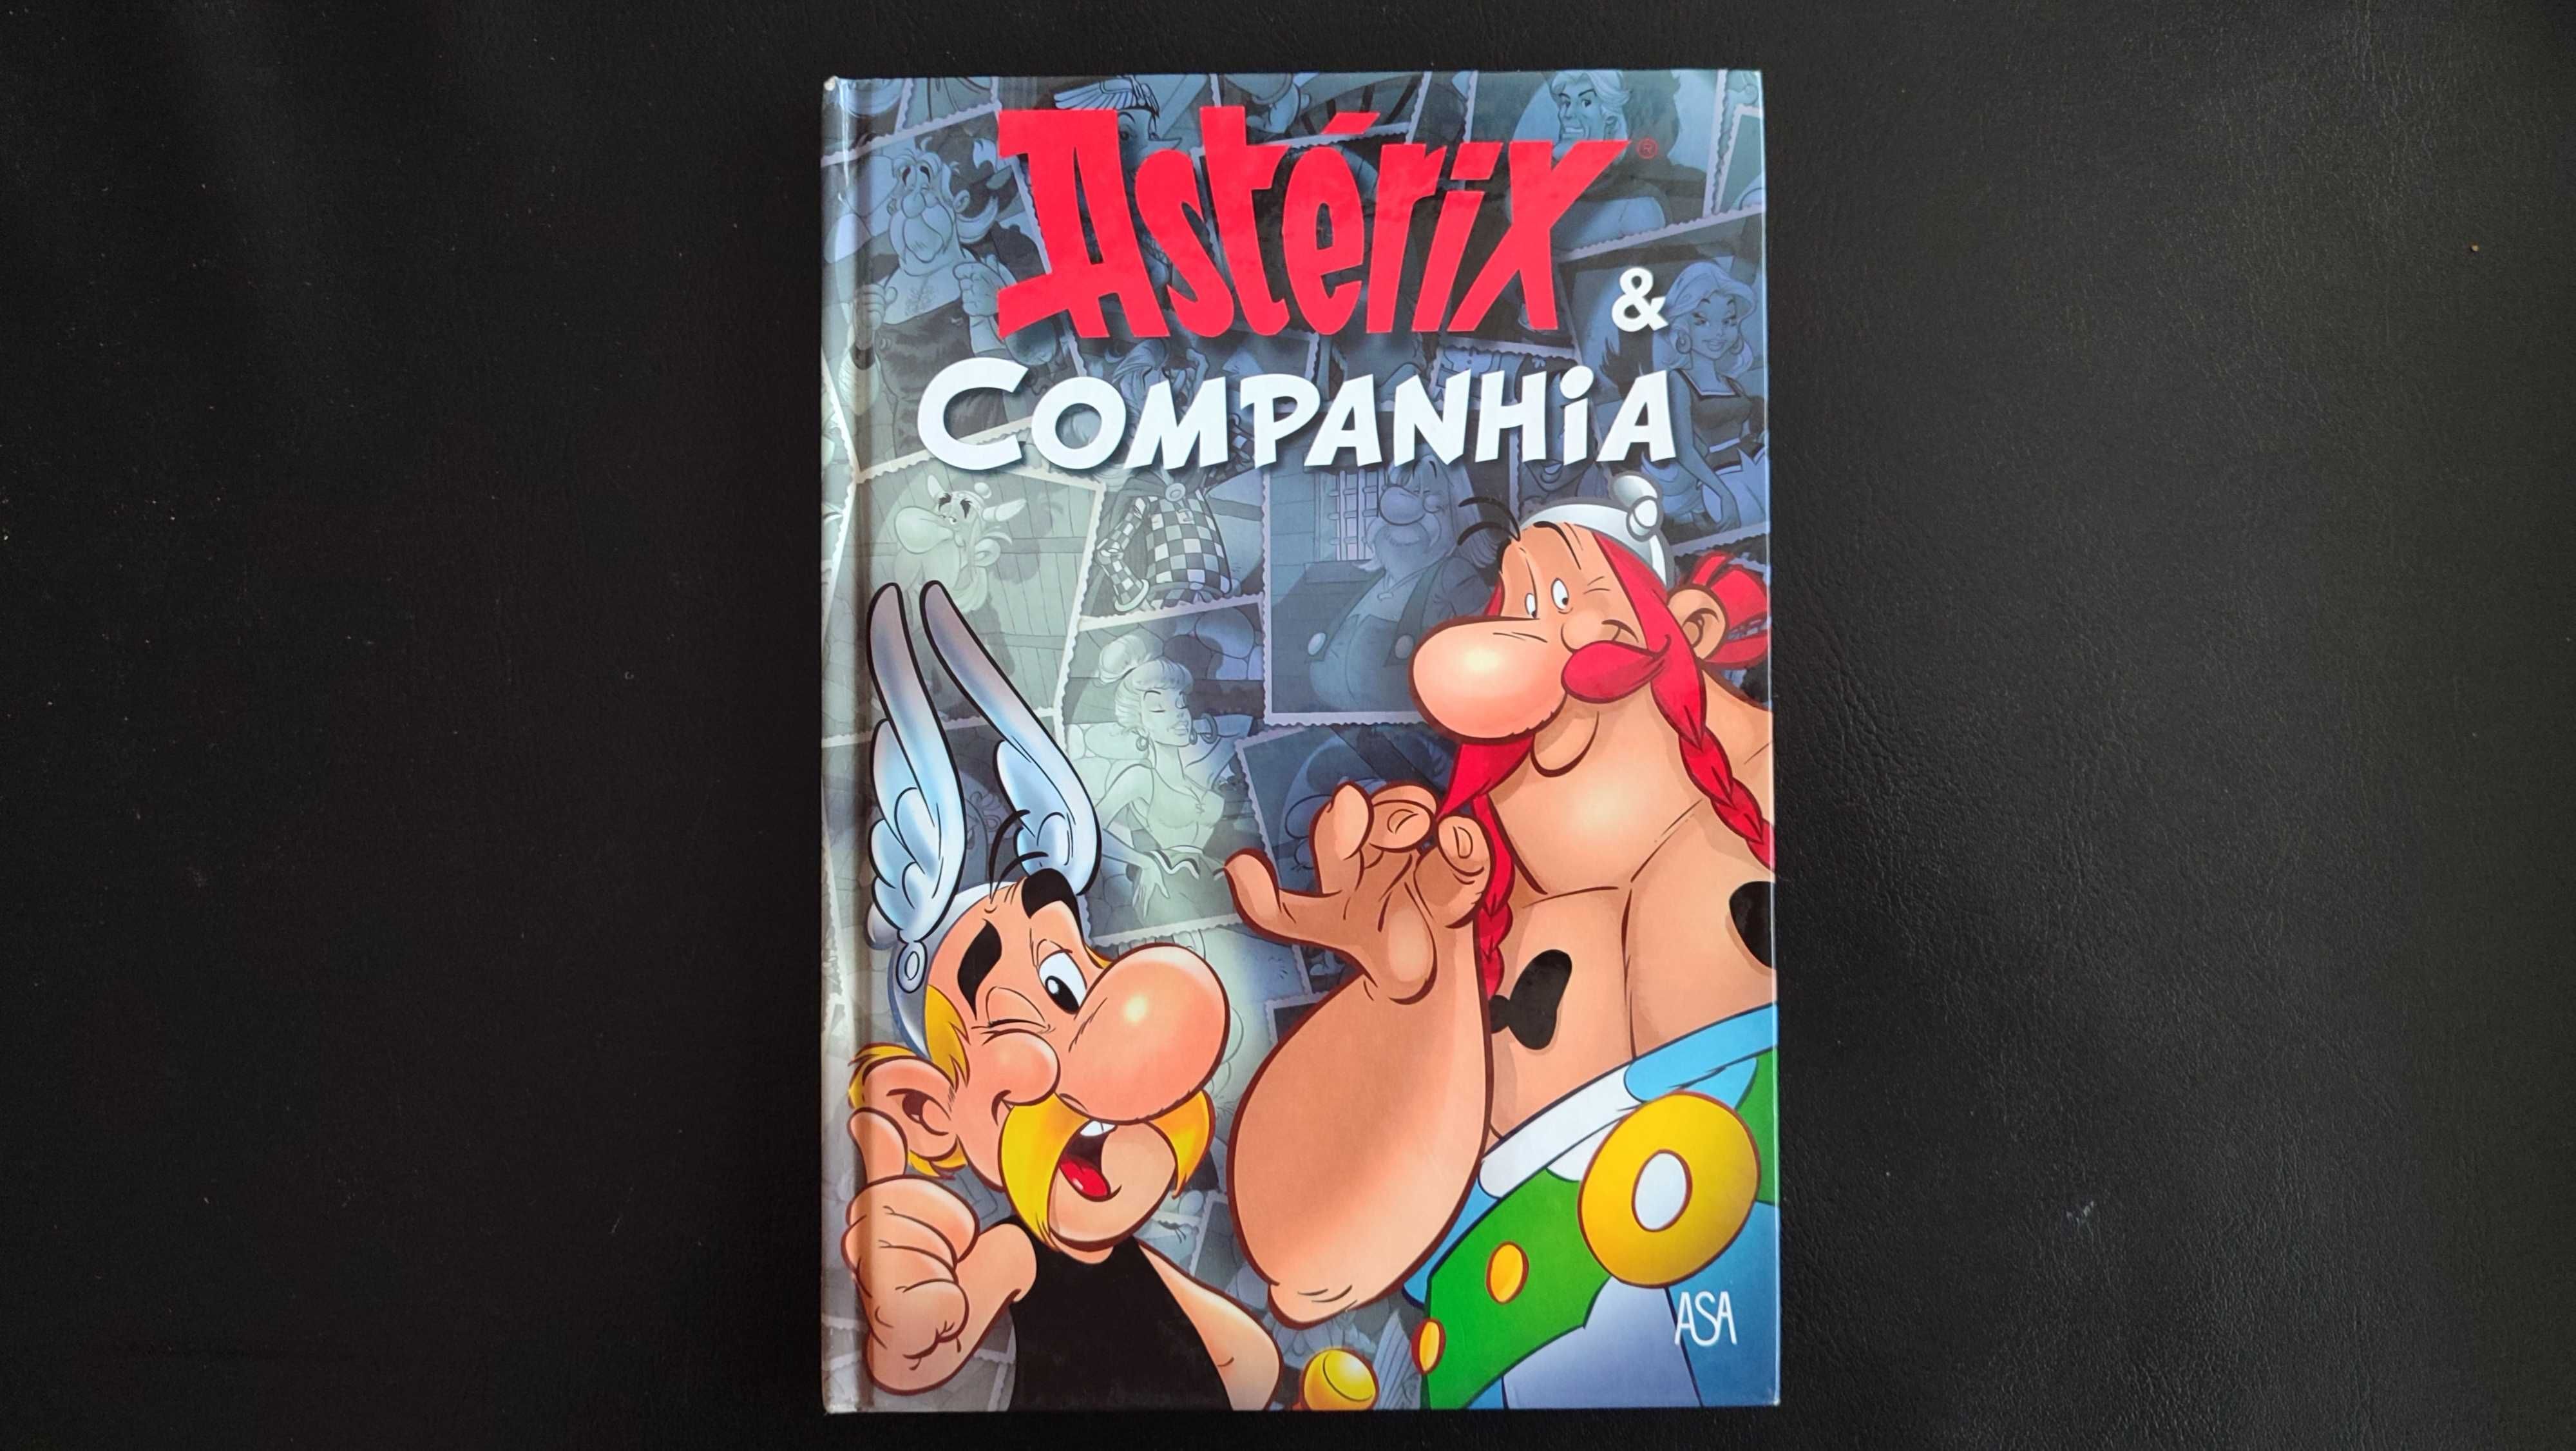 Astérix & Companhia